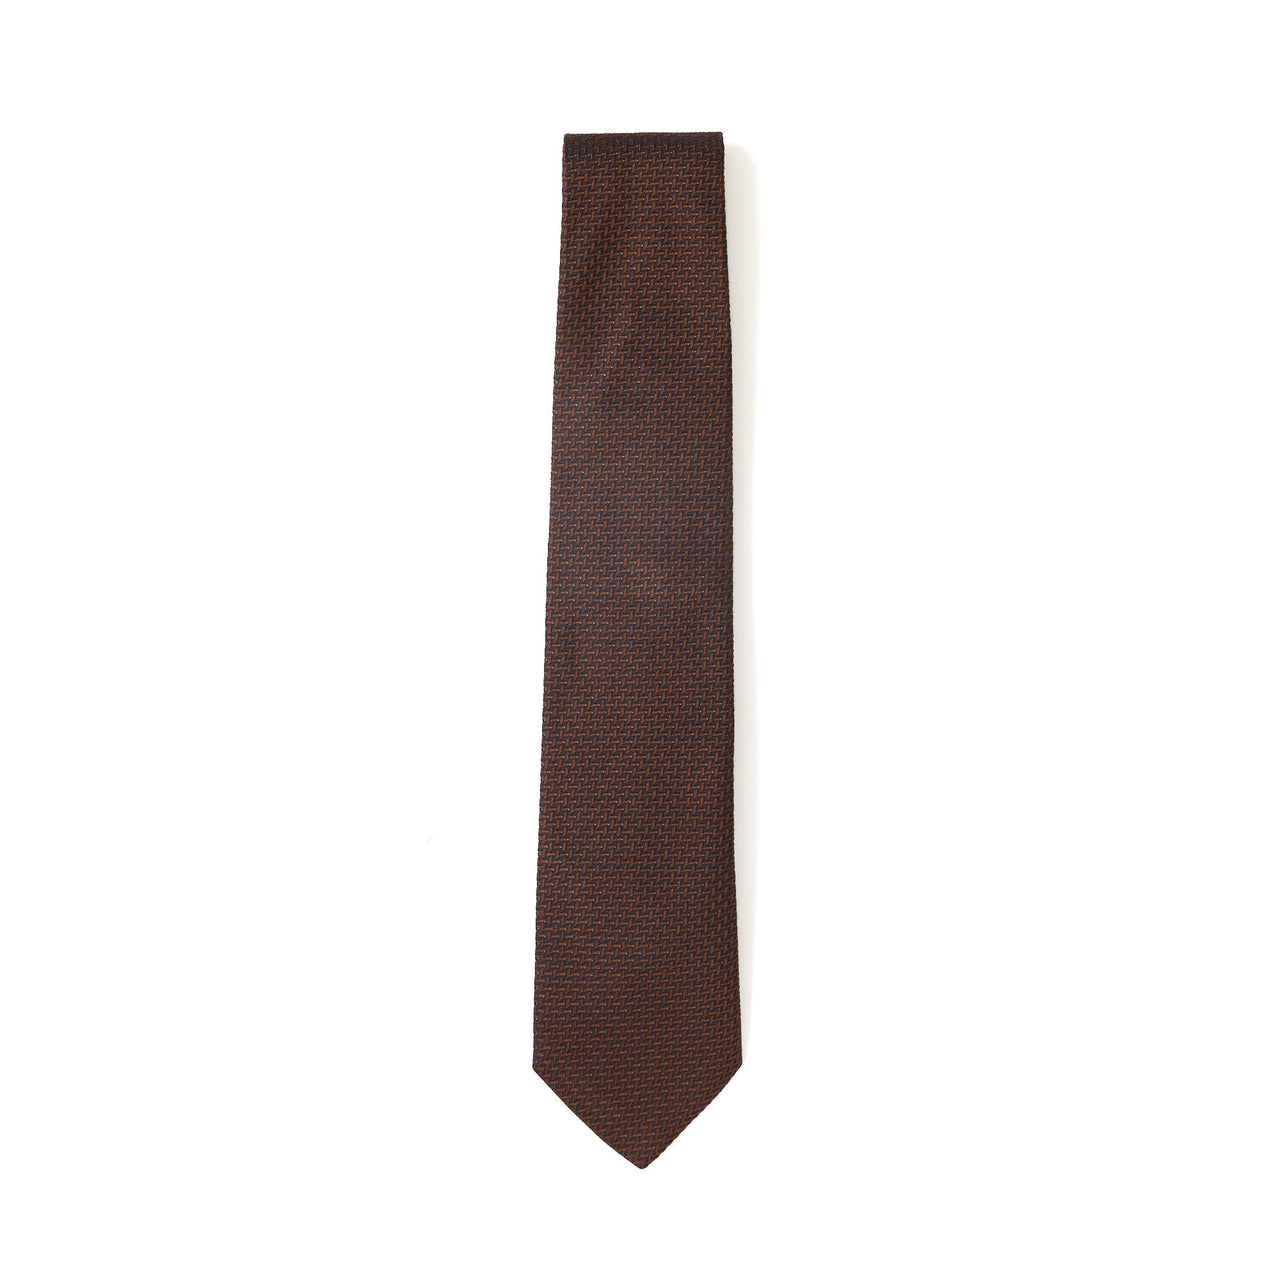 HENRY SARTORIAL 100% Silk Jacquard Tie BROWN